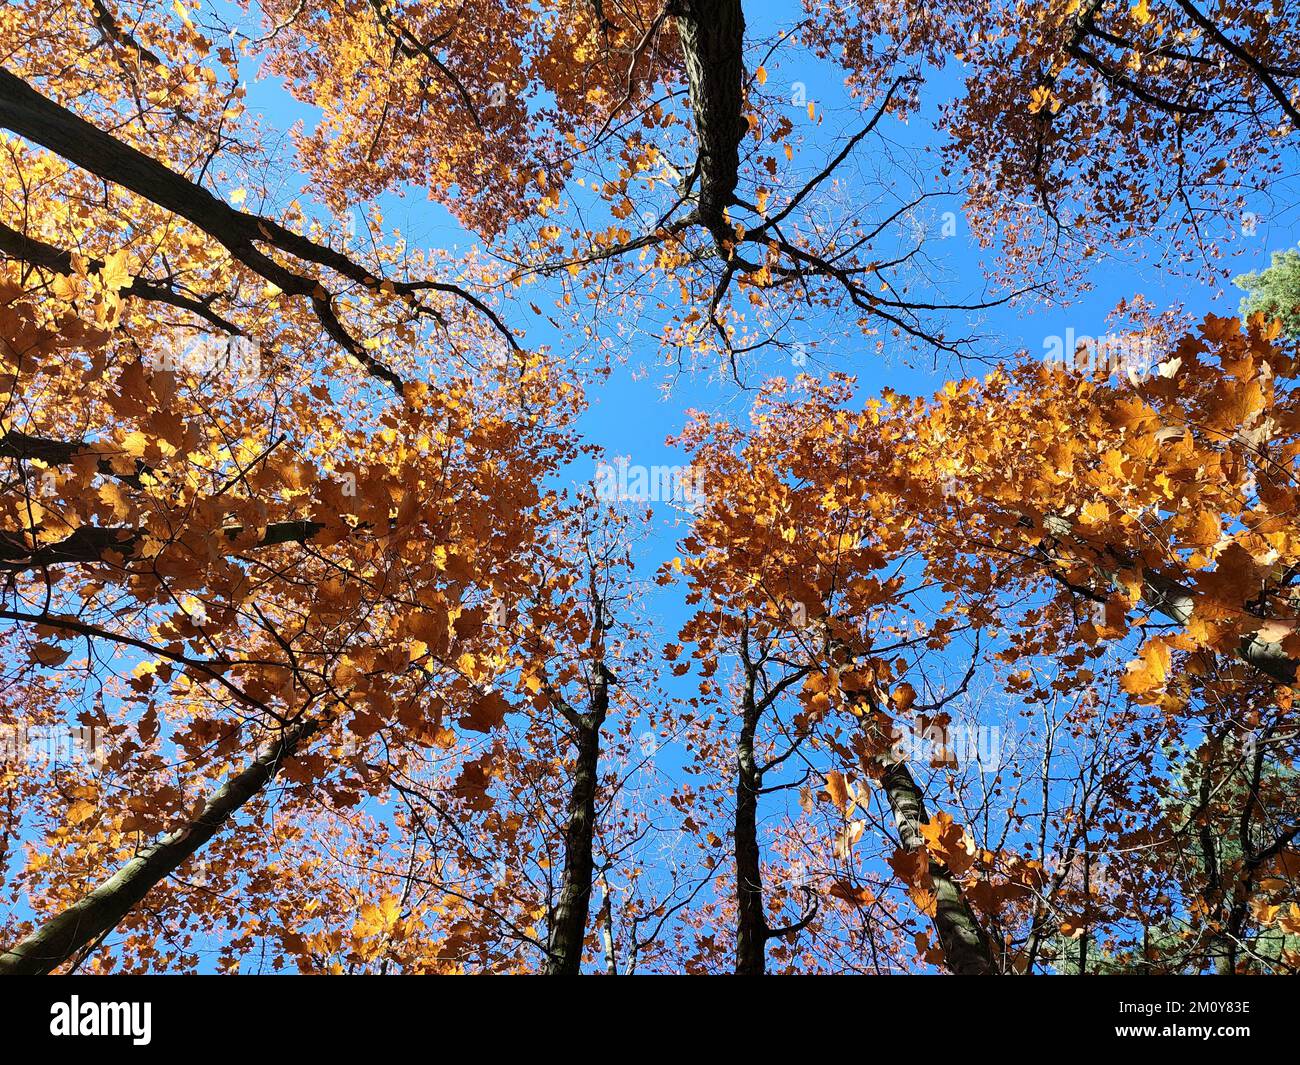 Baumwipfel mit roten orangefarbenen Blättern, die im Wind im Hintergrund schweben, ein klarer blauer Himmel am sonnigen Herbsttag. Ansicht von unten. Wälder, Wälder, Natur im Herbst, saisonale Kulisse. Wunderschöner natürlicher Hintergrund Stockfoto